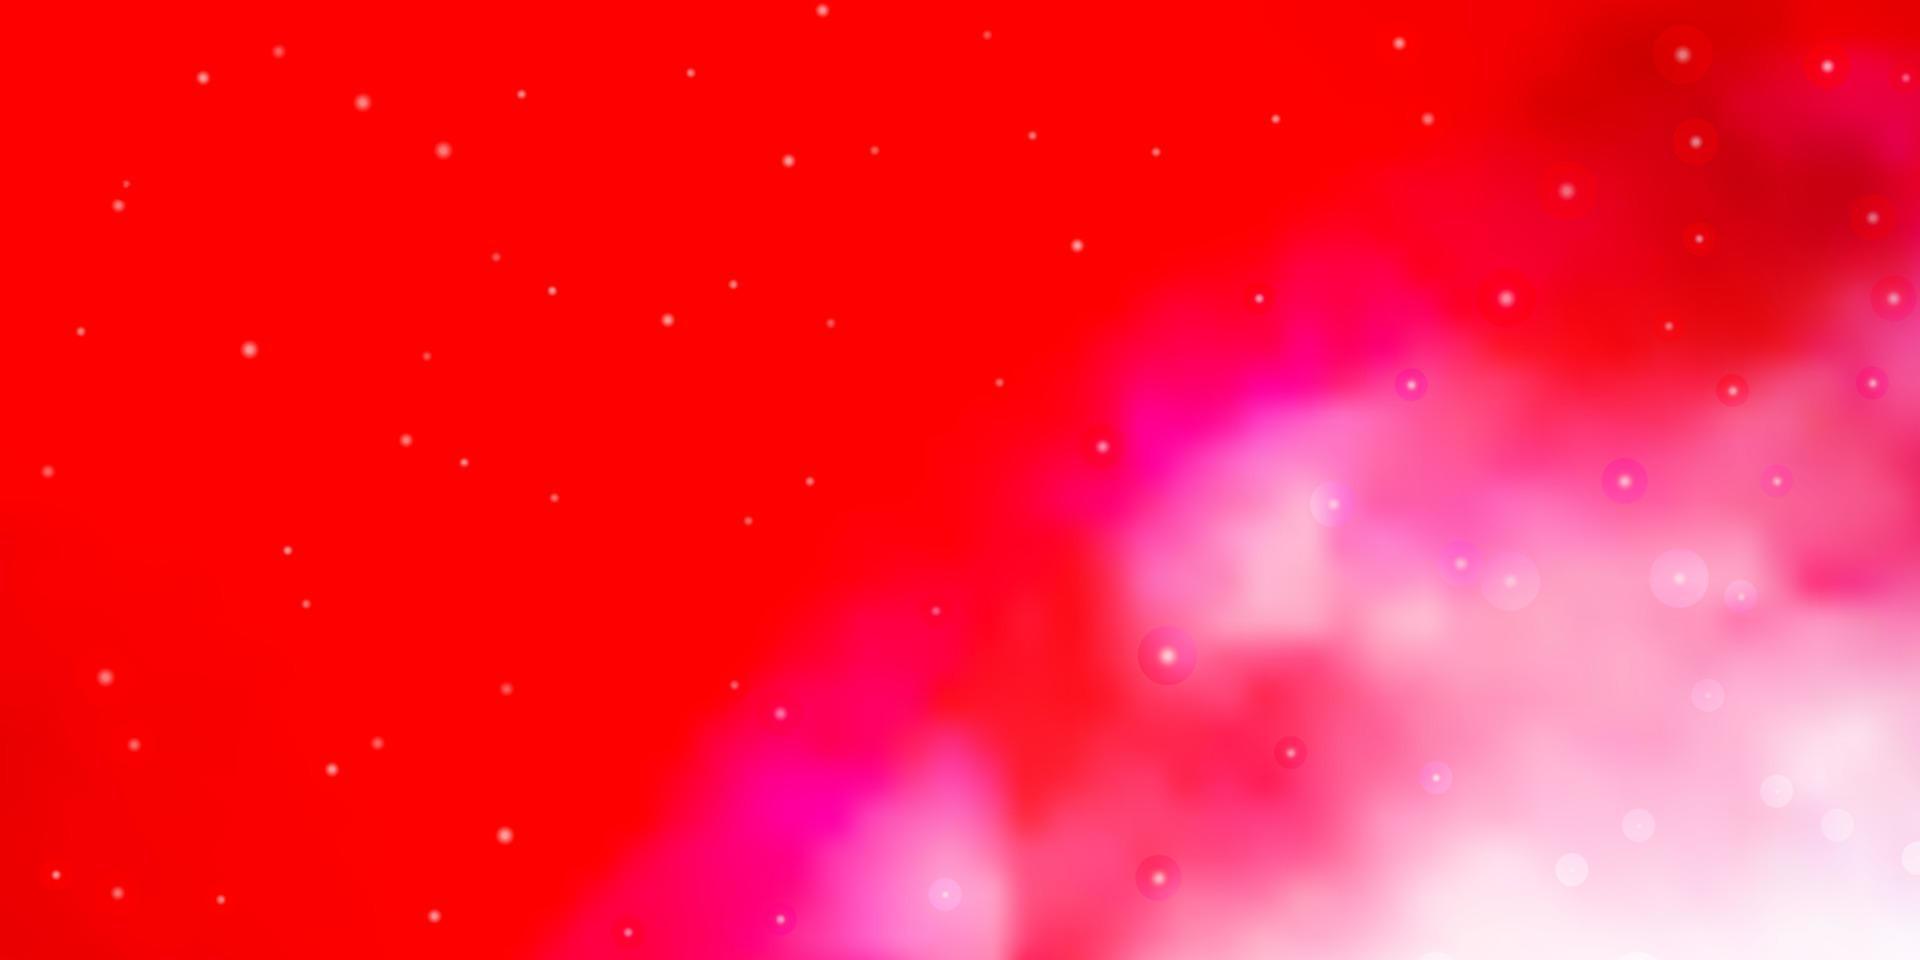 fundo vector vermelho claro com estrelas pequenas e grandes.